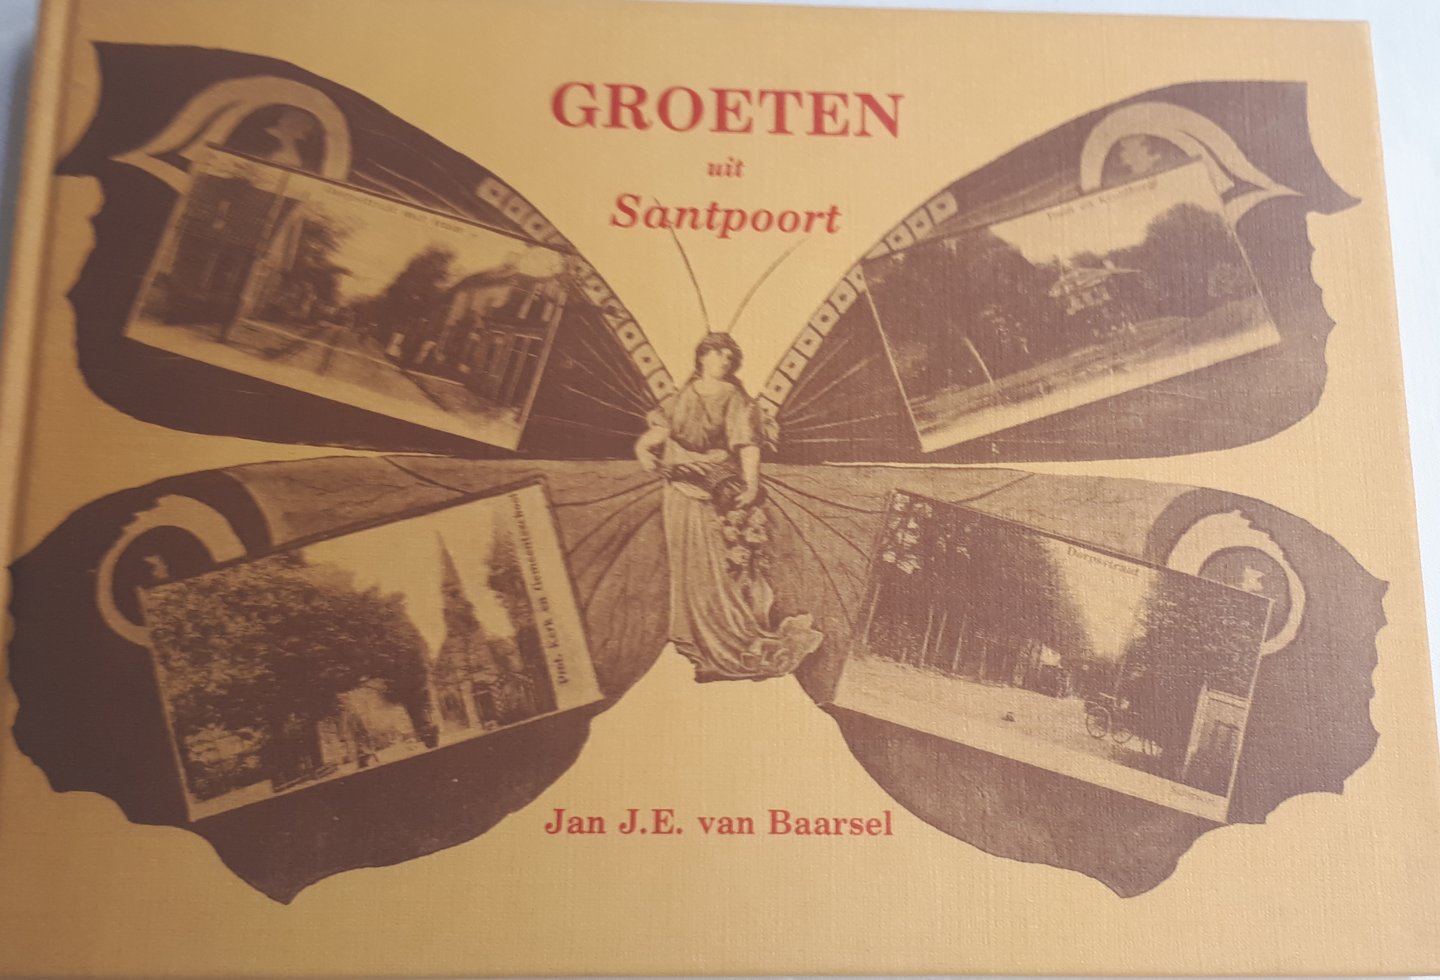 BAARSEL, Jan J. E. van - Groeten uit Santpoort. Beeldverhaal van het dorp van "toen"